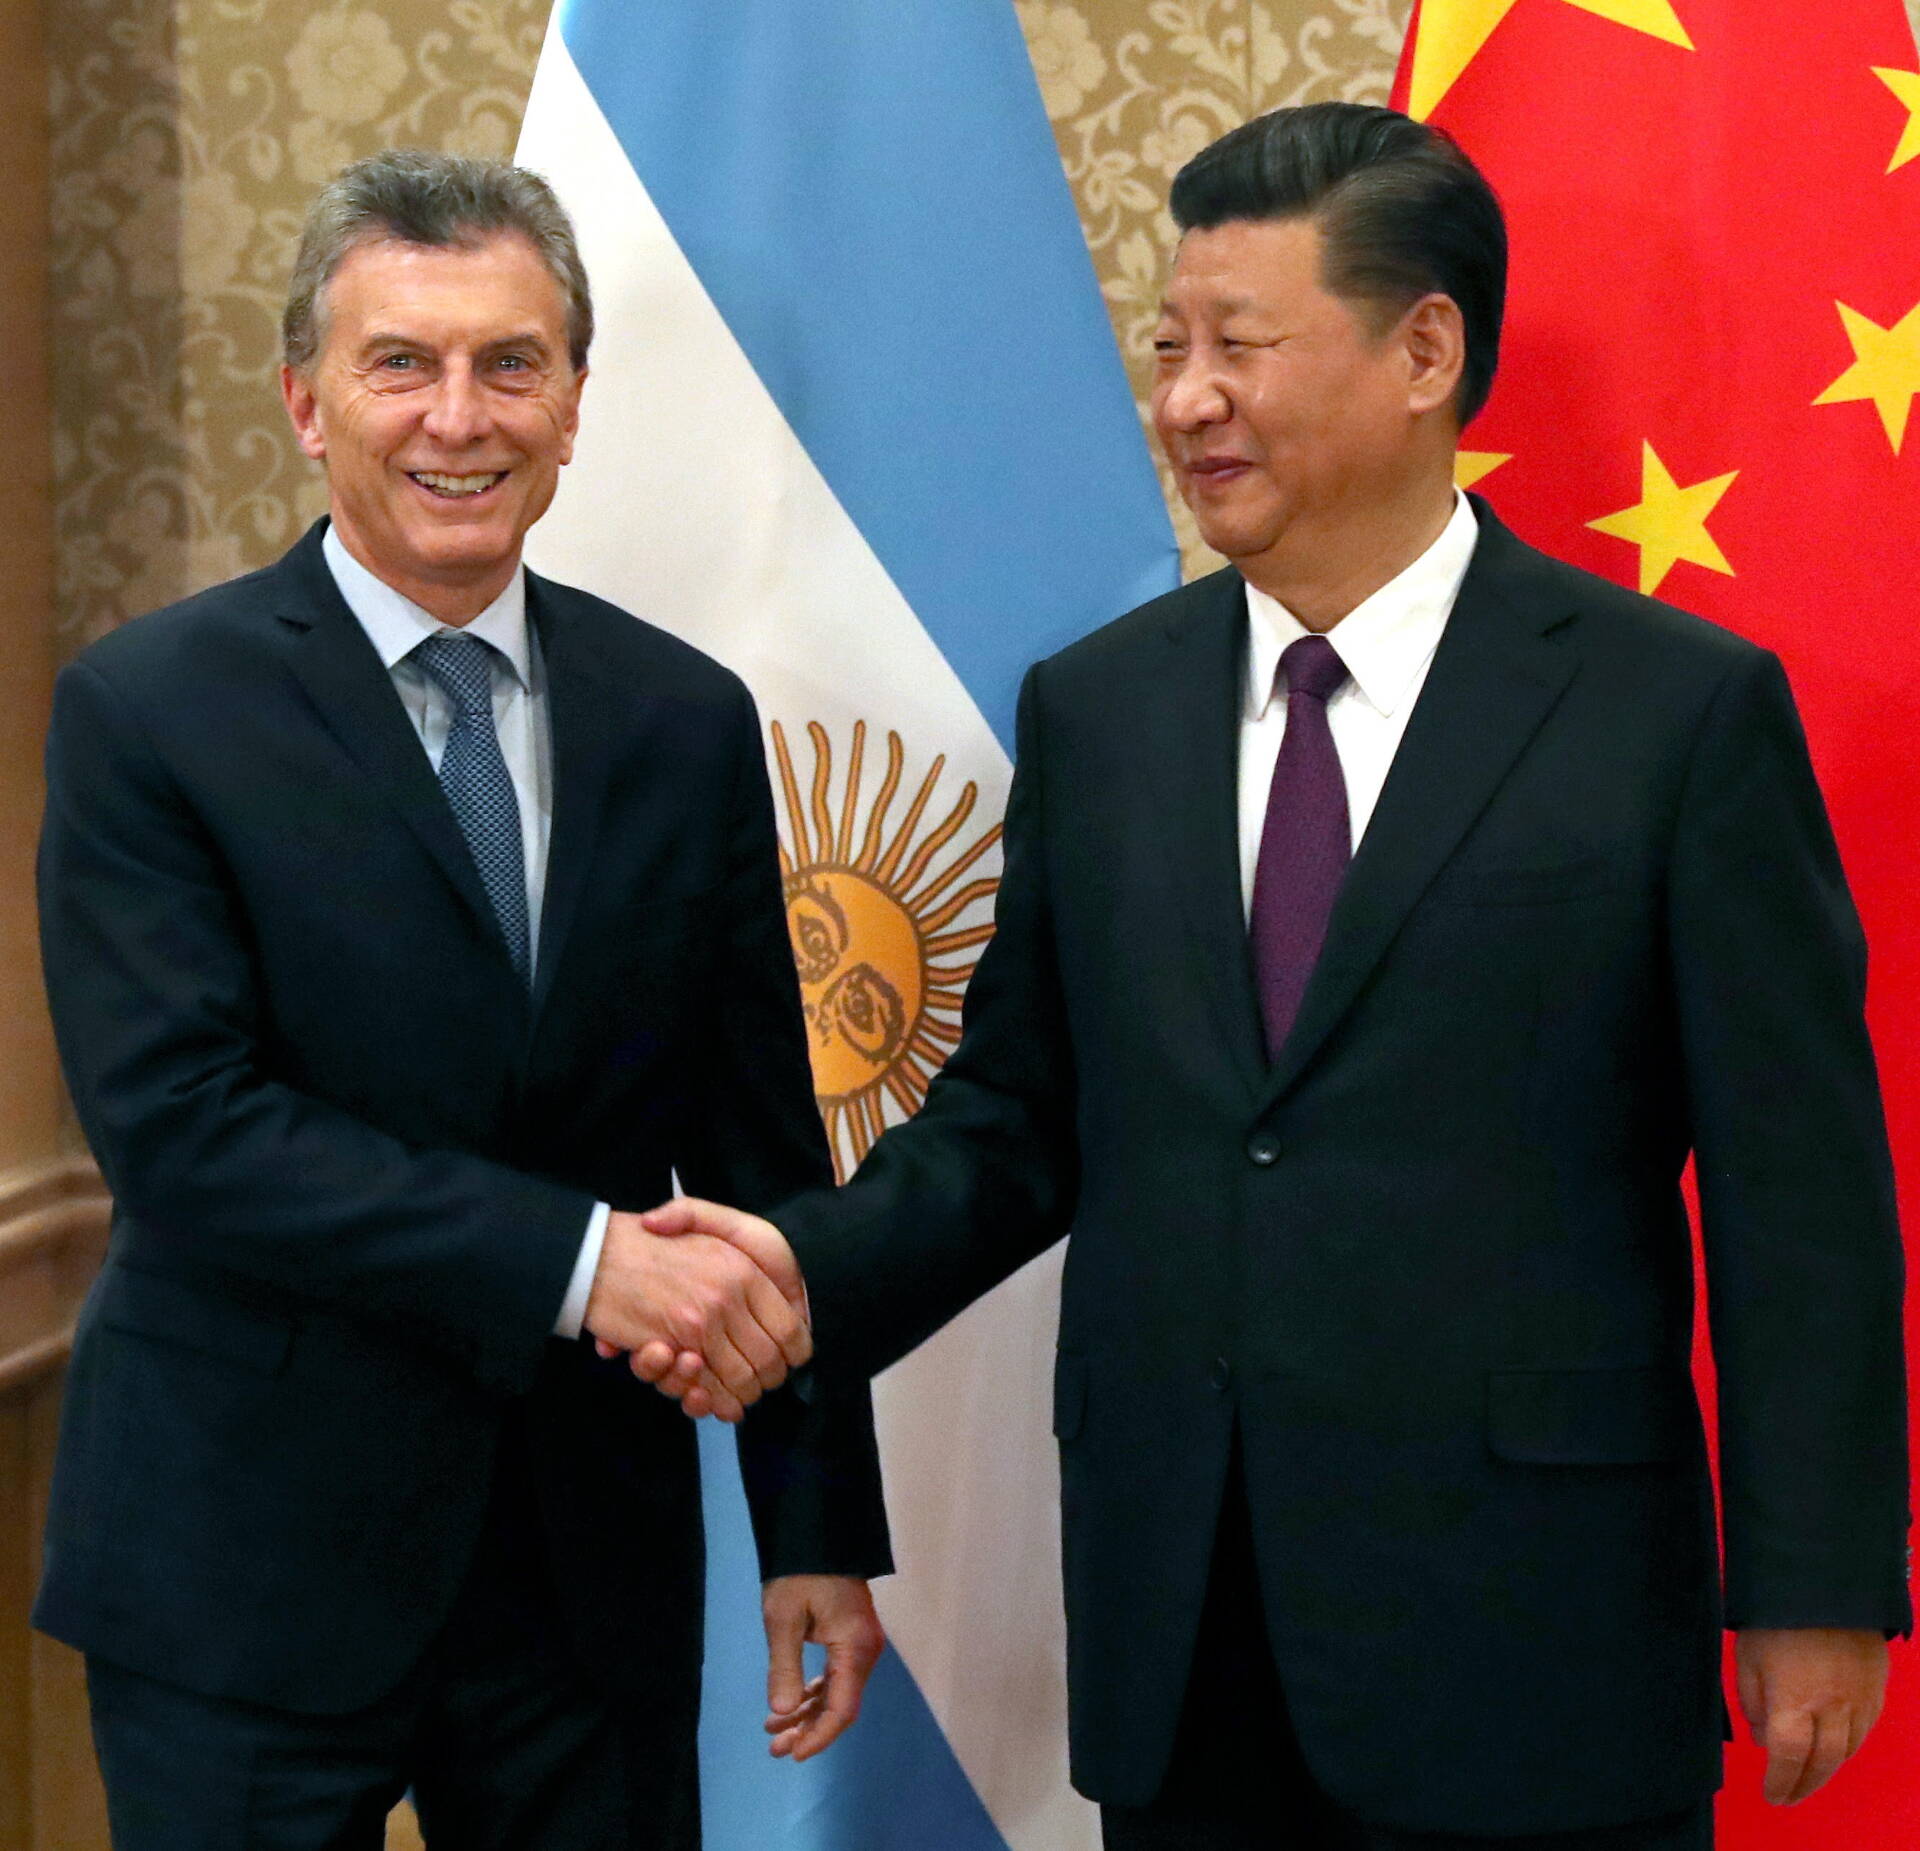 Macri y Xi Jinping coincidieron en fortalecer la relación estratégica entre la Argentina y China  